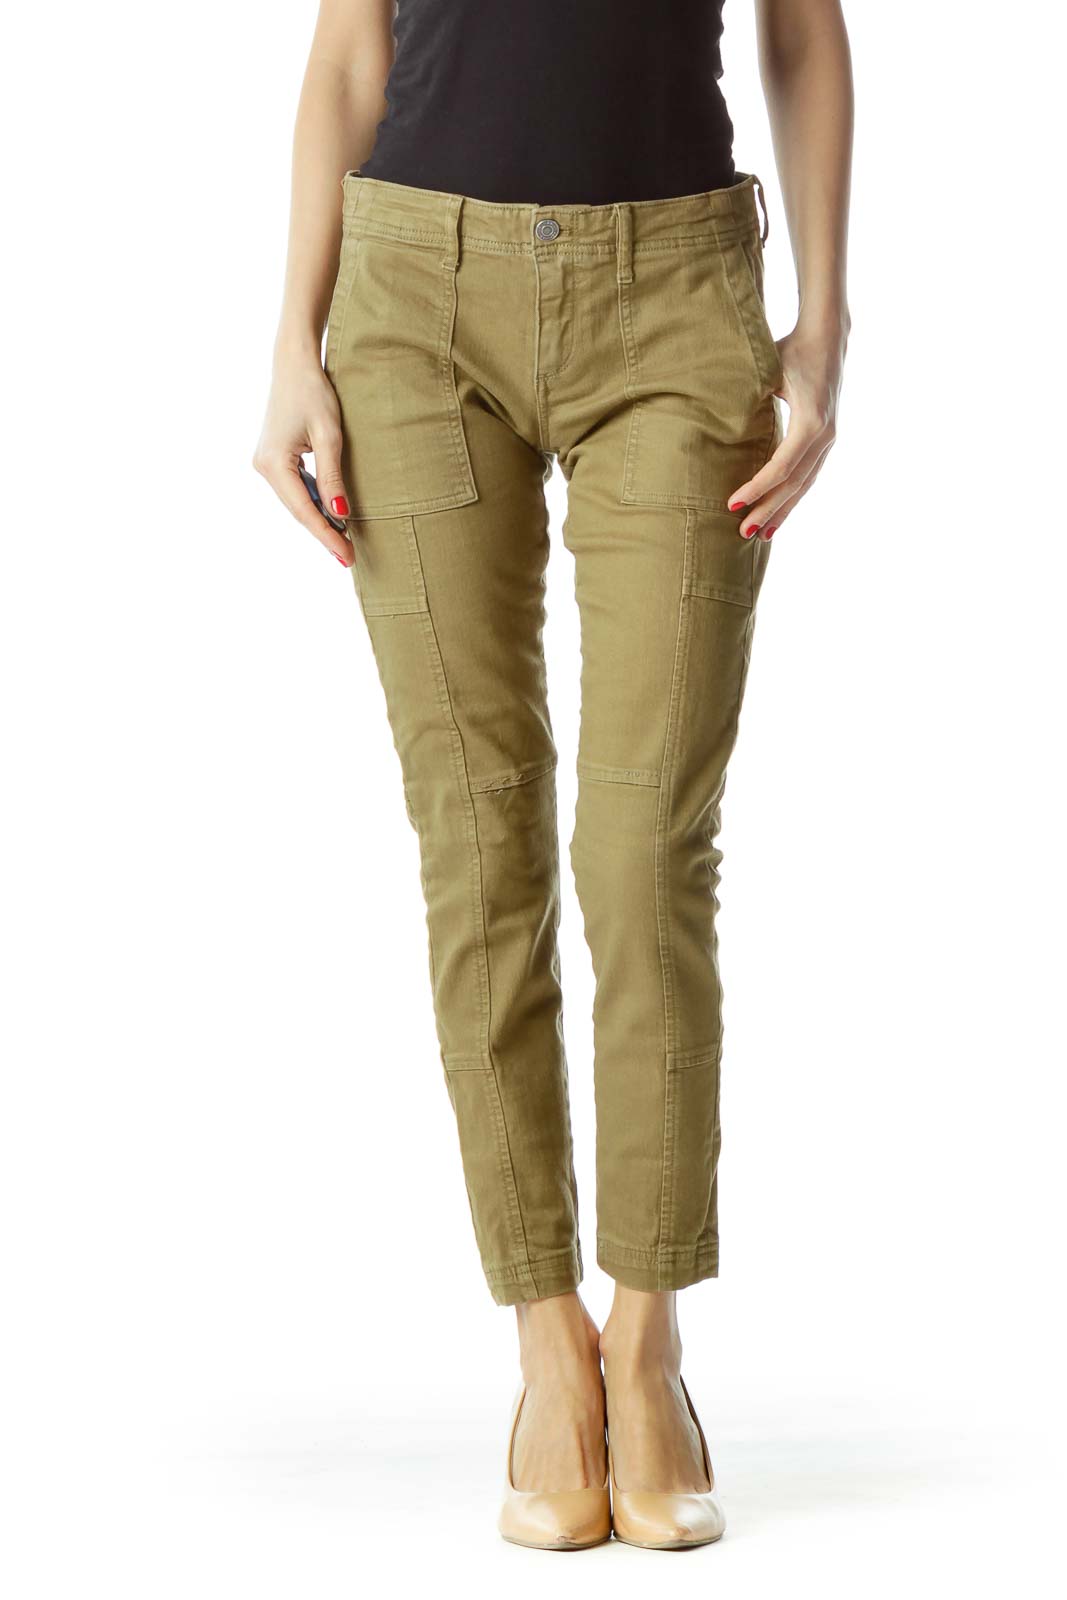 Olive Green Skinny Pocketed Denim Pants Front